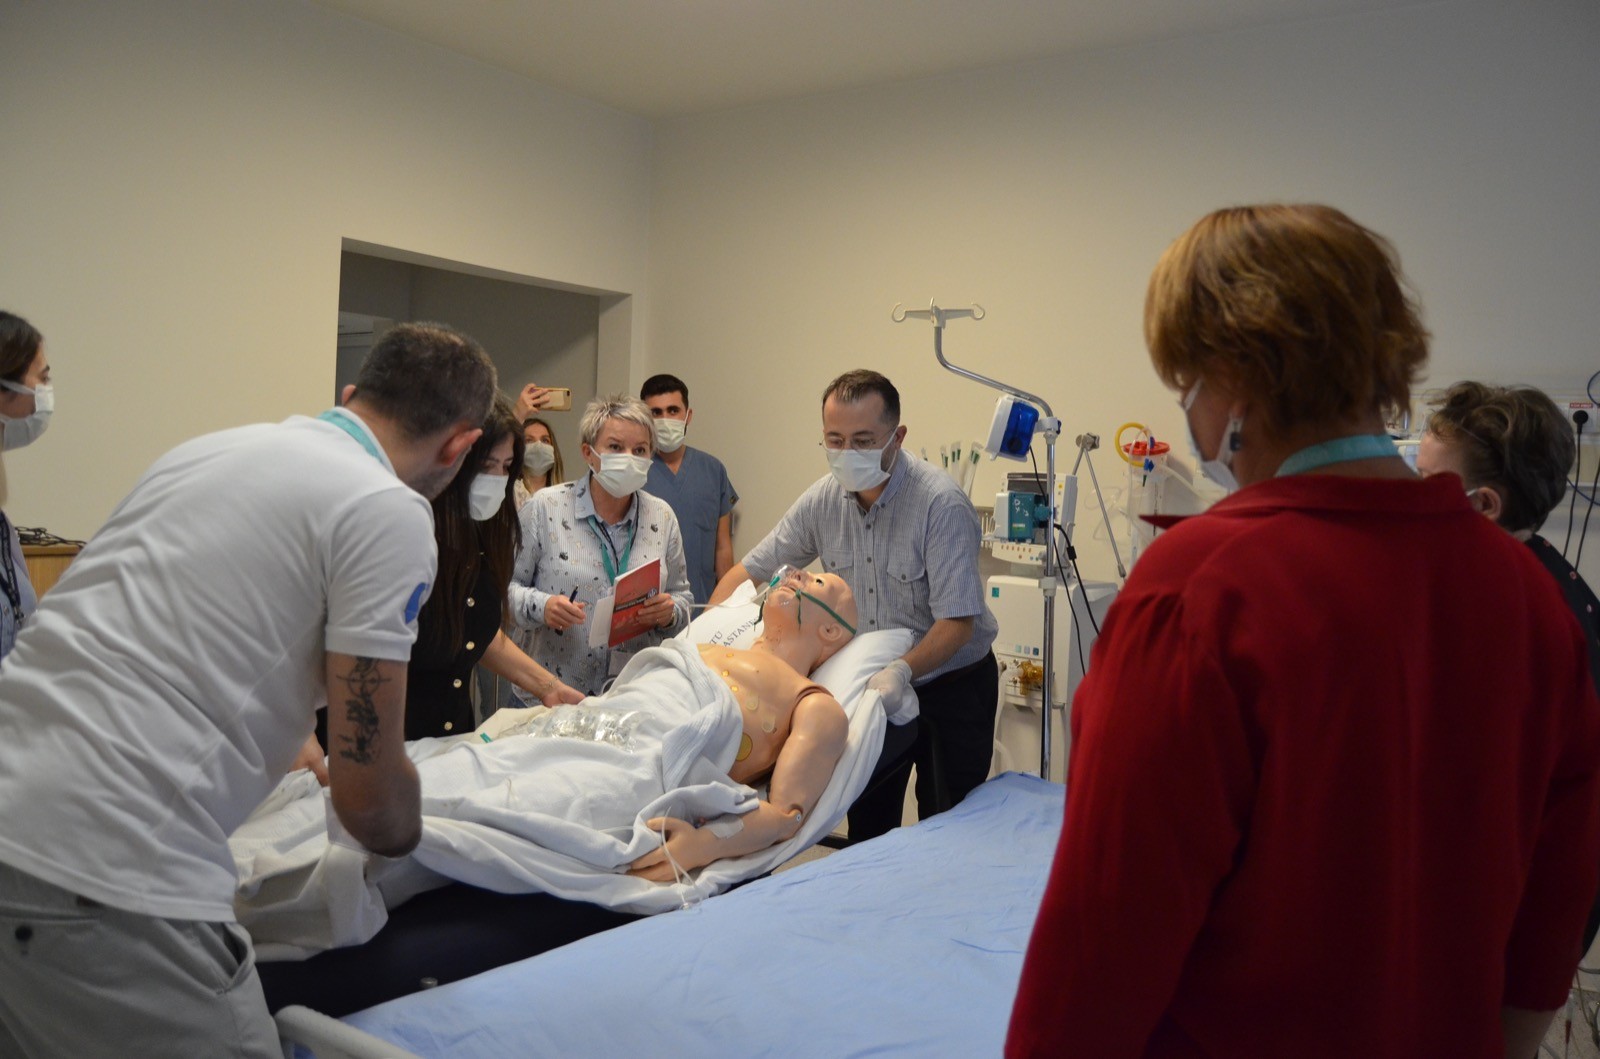 Avrupa’dan Trabzon'a gelip simülasyon merkezinde doktorluğu öğreniyorlar